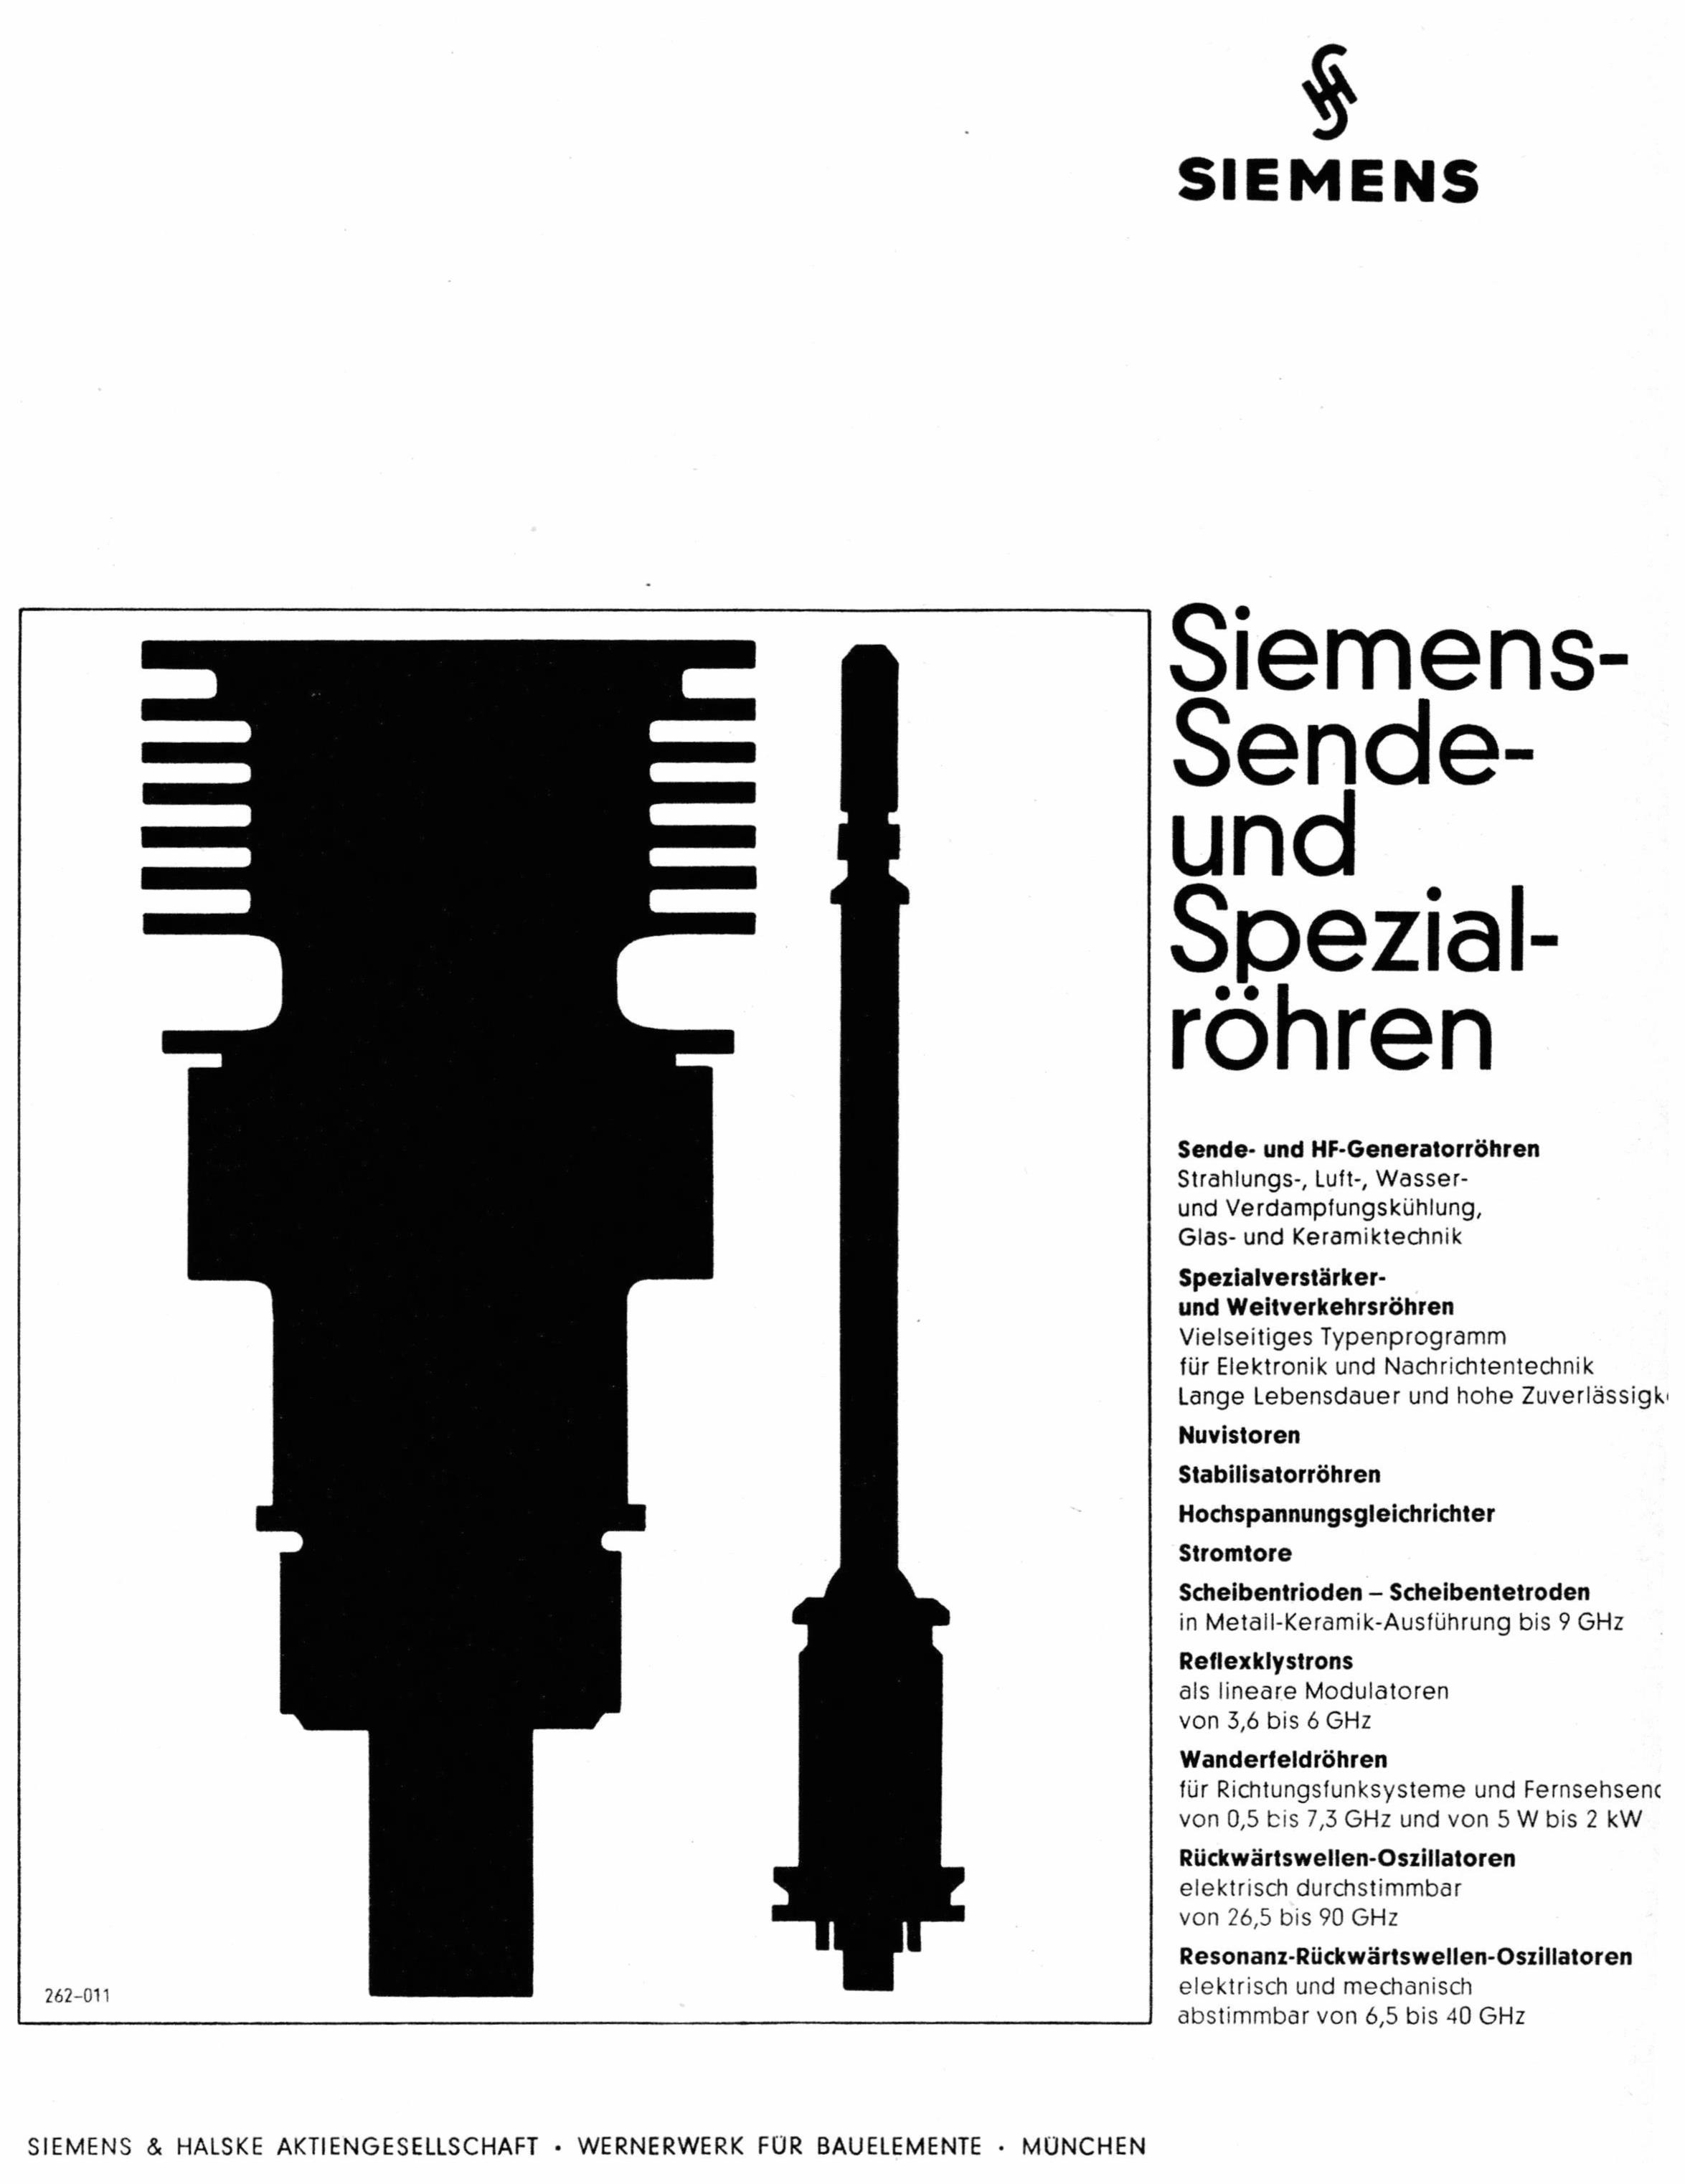 Siemens 1965 2.jpg